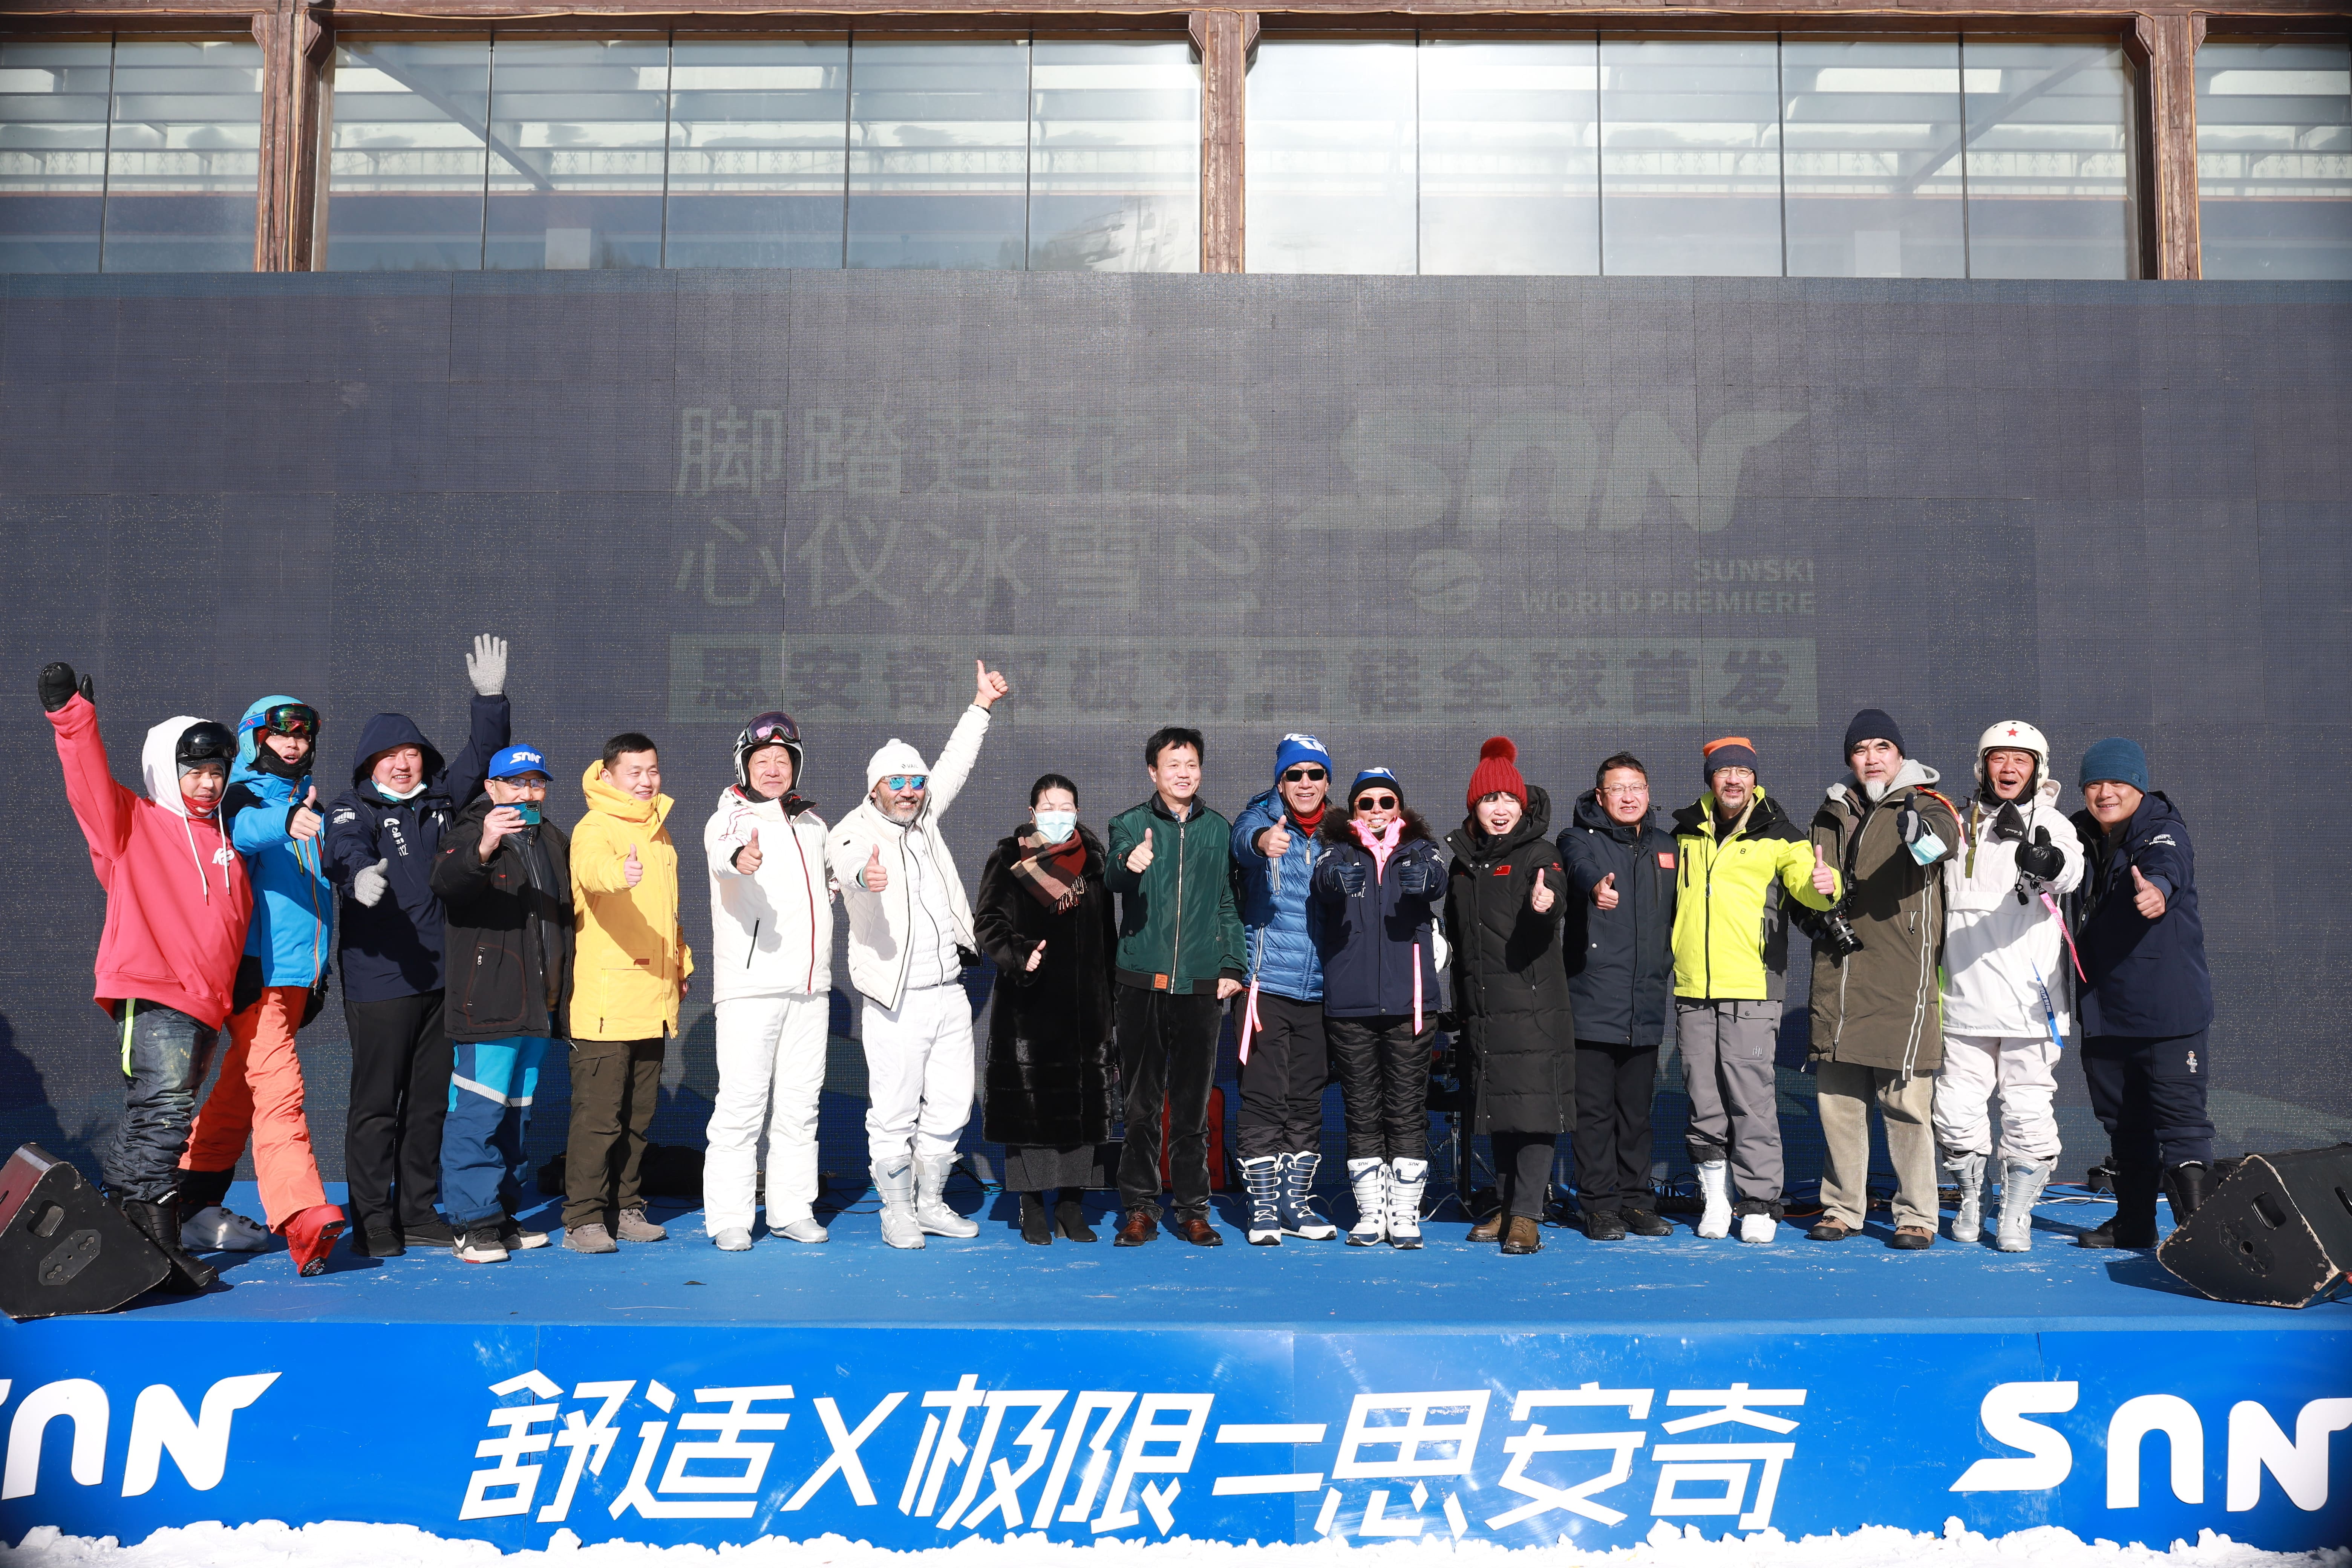 中国民族品牌发起对世界滑雪轻装备的革新与挑战